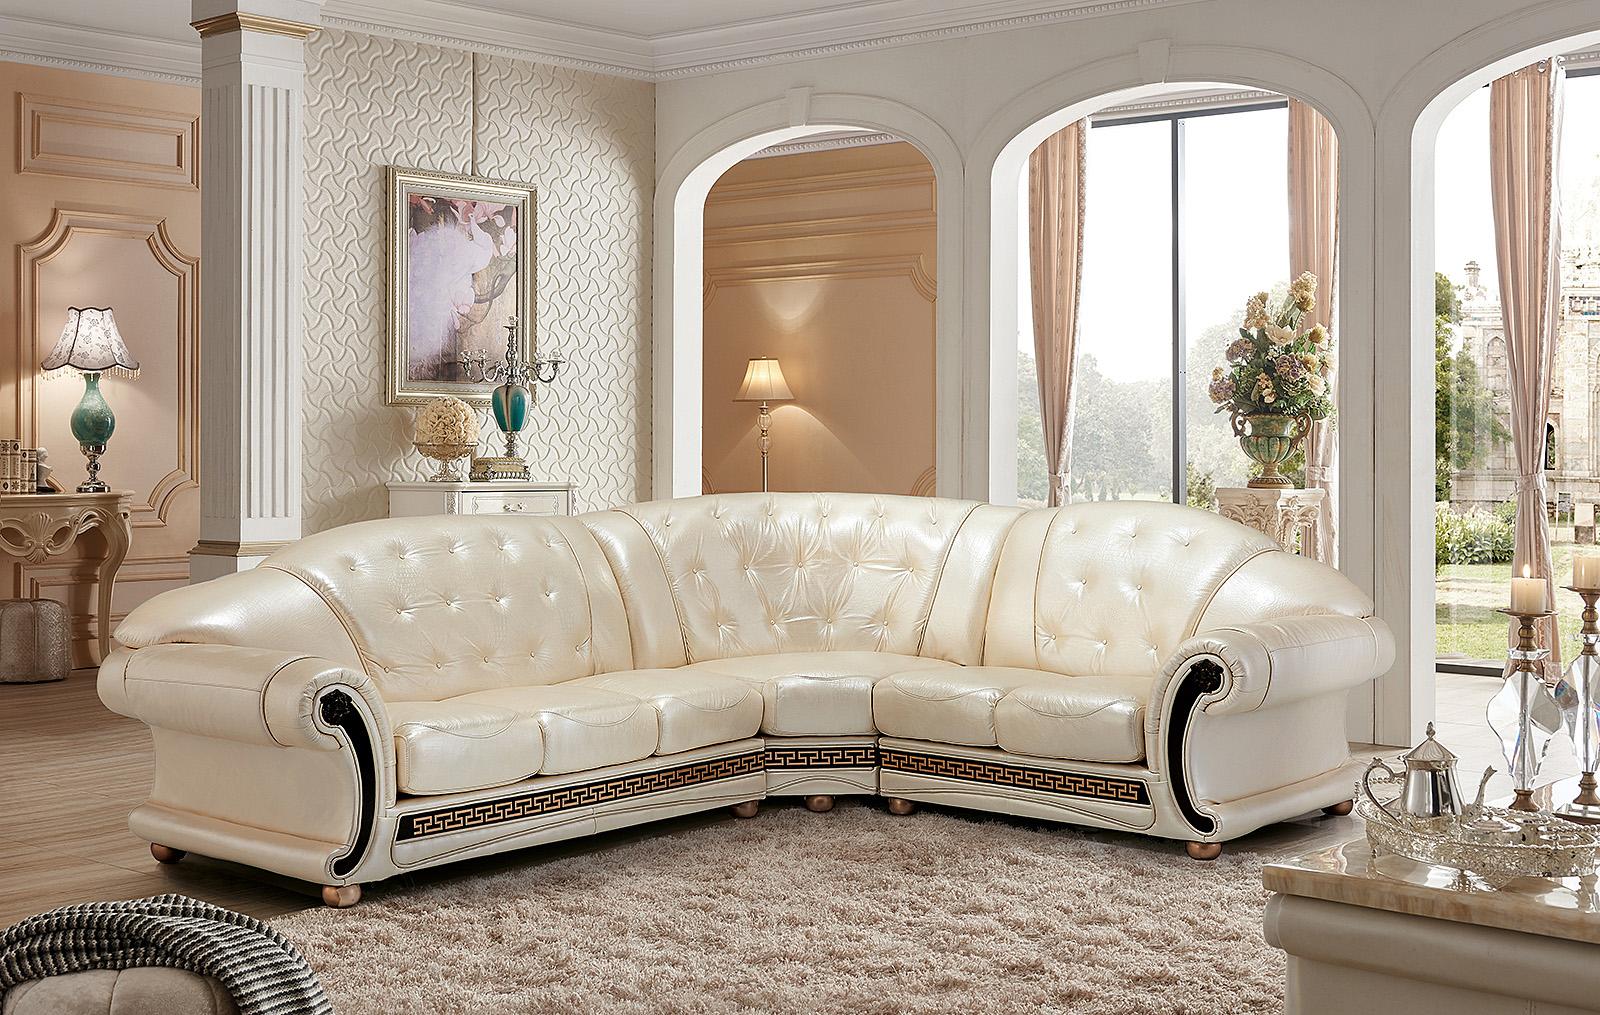 

    
Anais RHC-PEARL Astoria Grand Sectional Sofa
